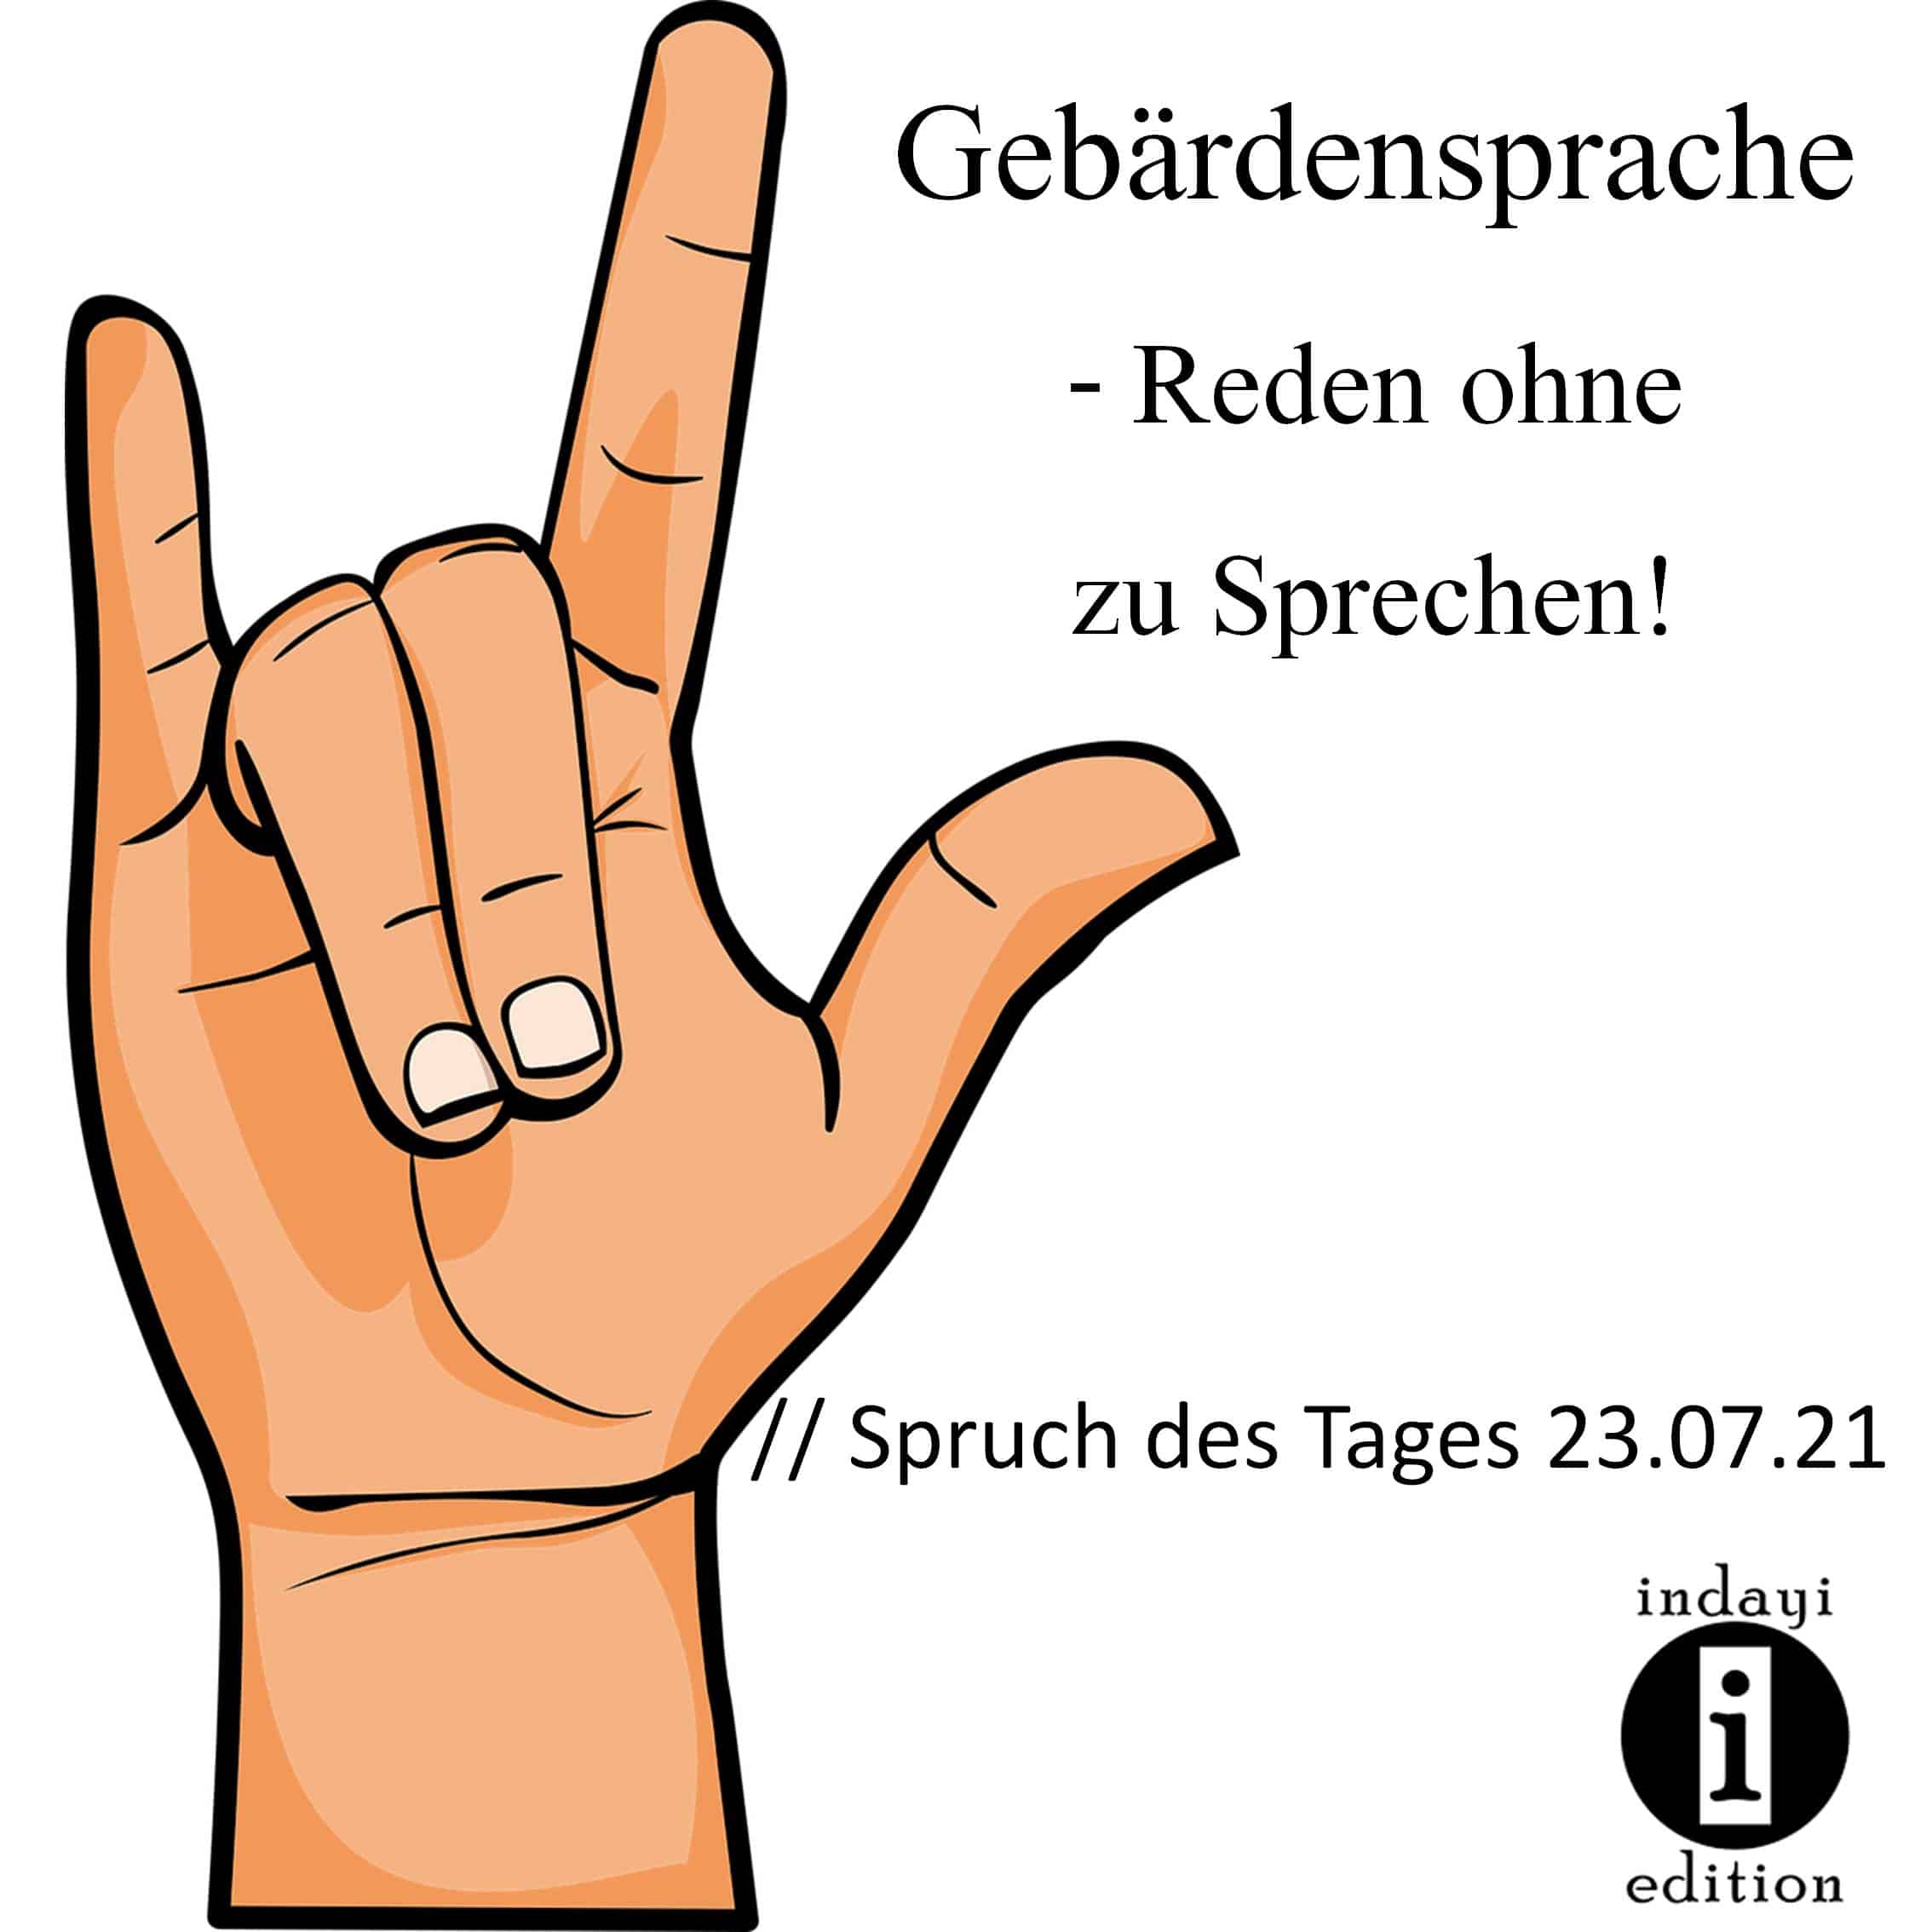 You are currently viewing Gebärdensprache – Reden ohne zu Sprechen! // Spruch des Tages 23.07.21